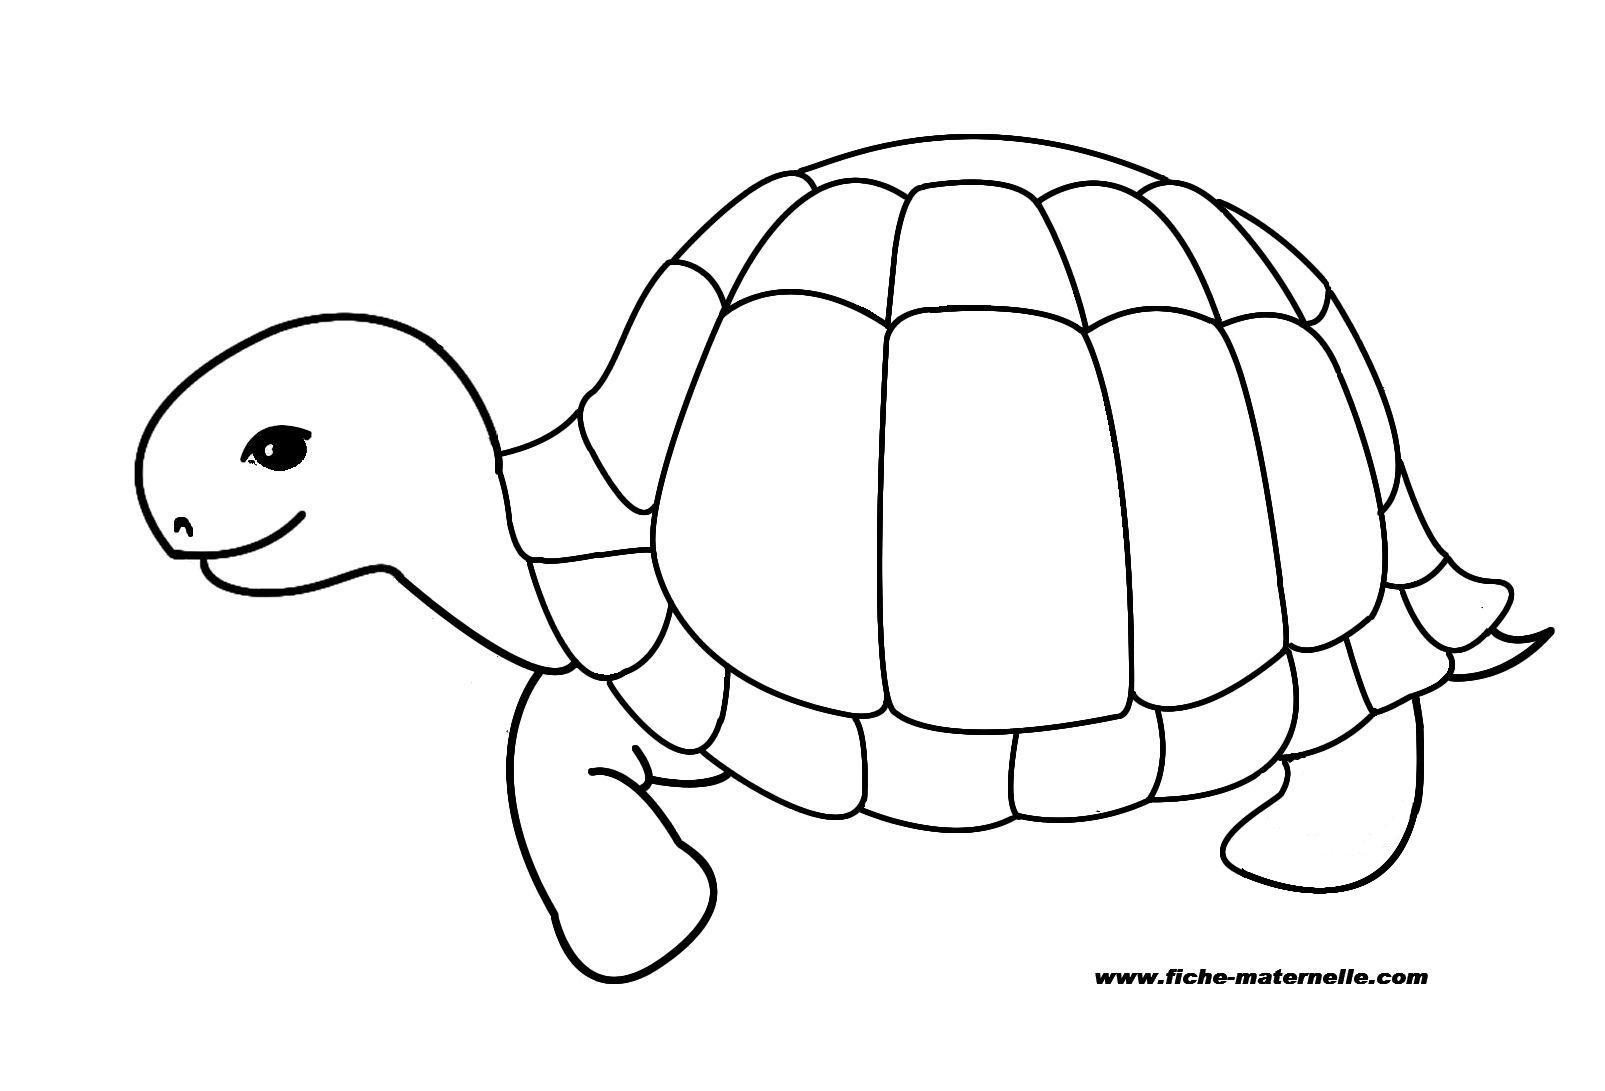 Раскраска черепаха для детей 5-6 лет